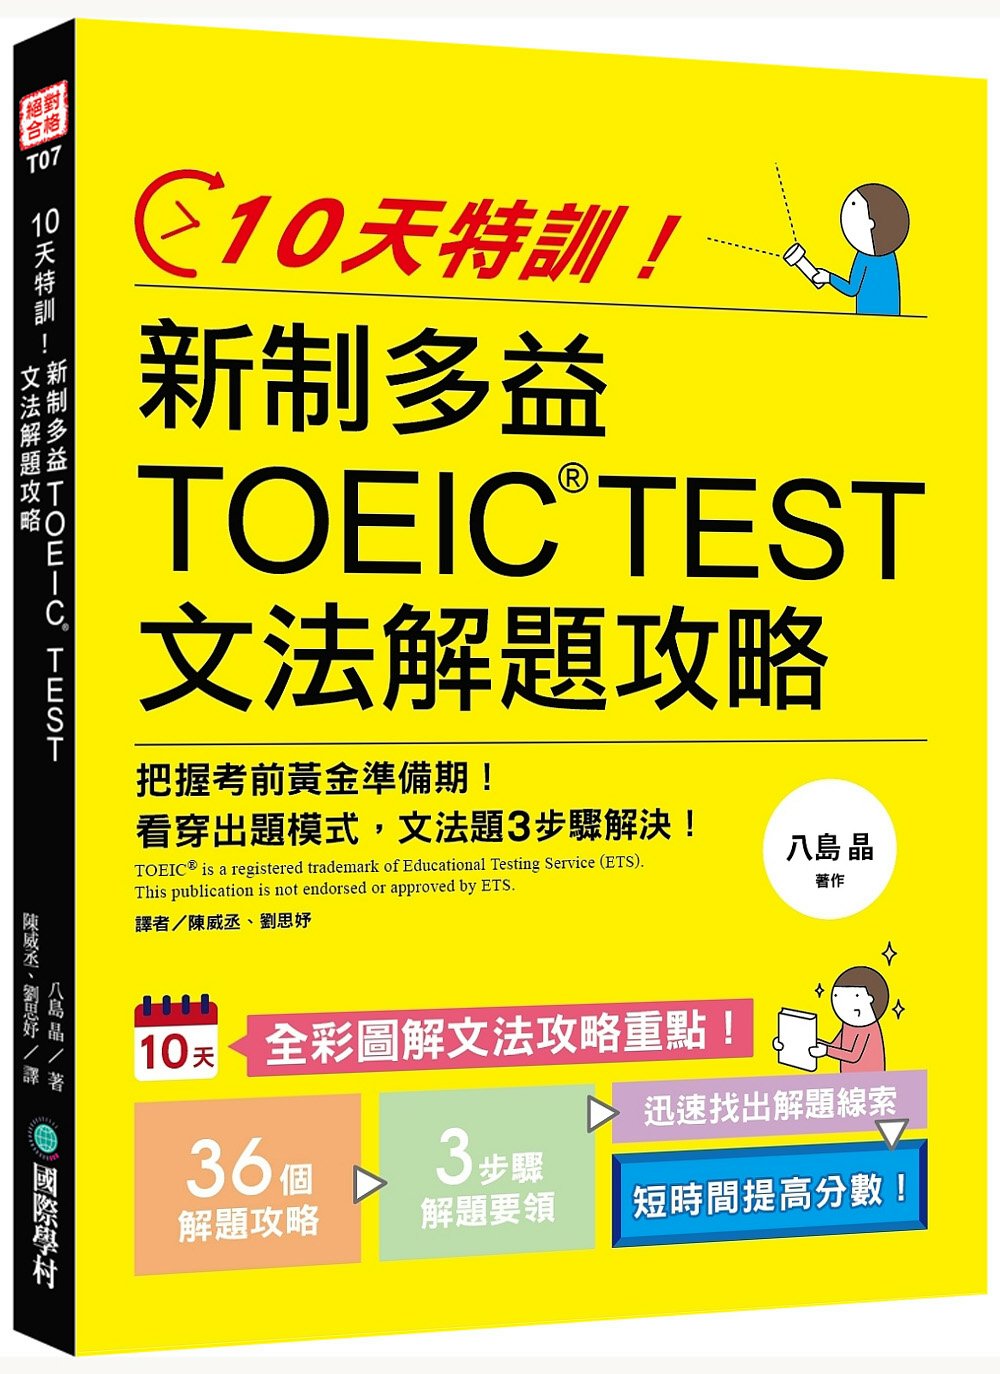 10天特訓！新制多益TOEIC TEST文法解題攻略：把握考前黃金準備期，看穿出題模式，文法題3步驟解決！